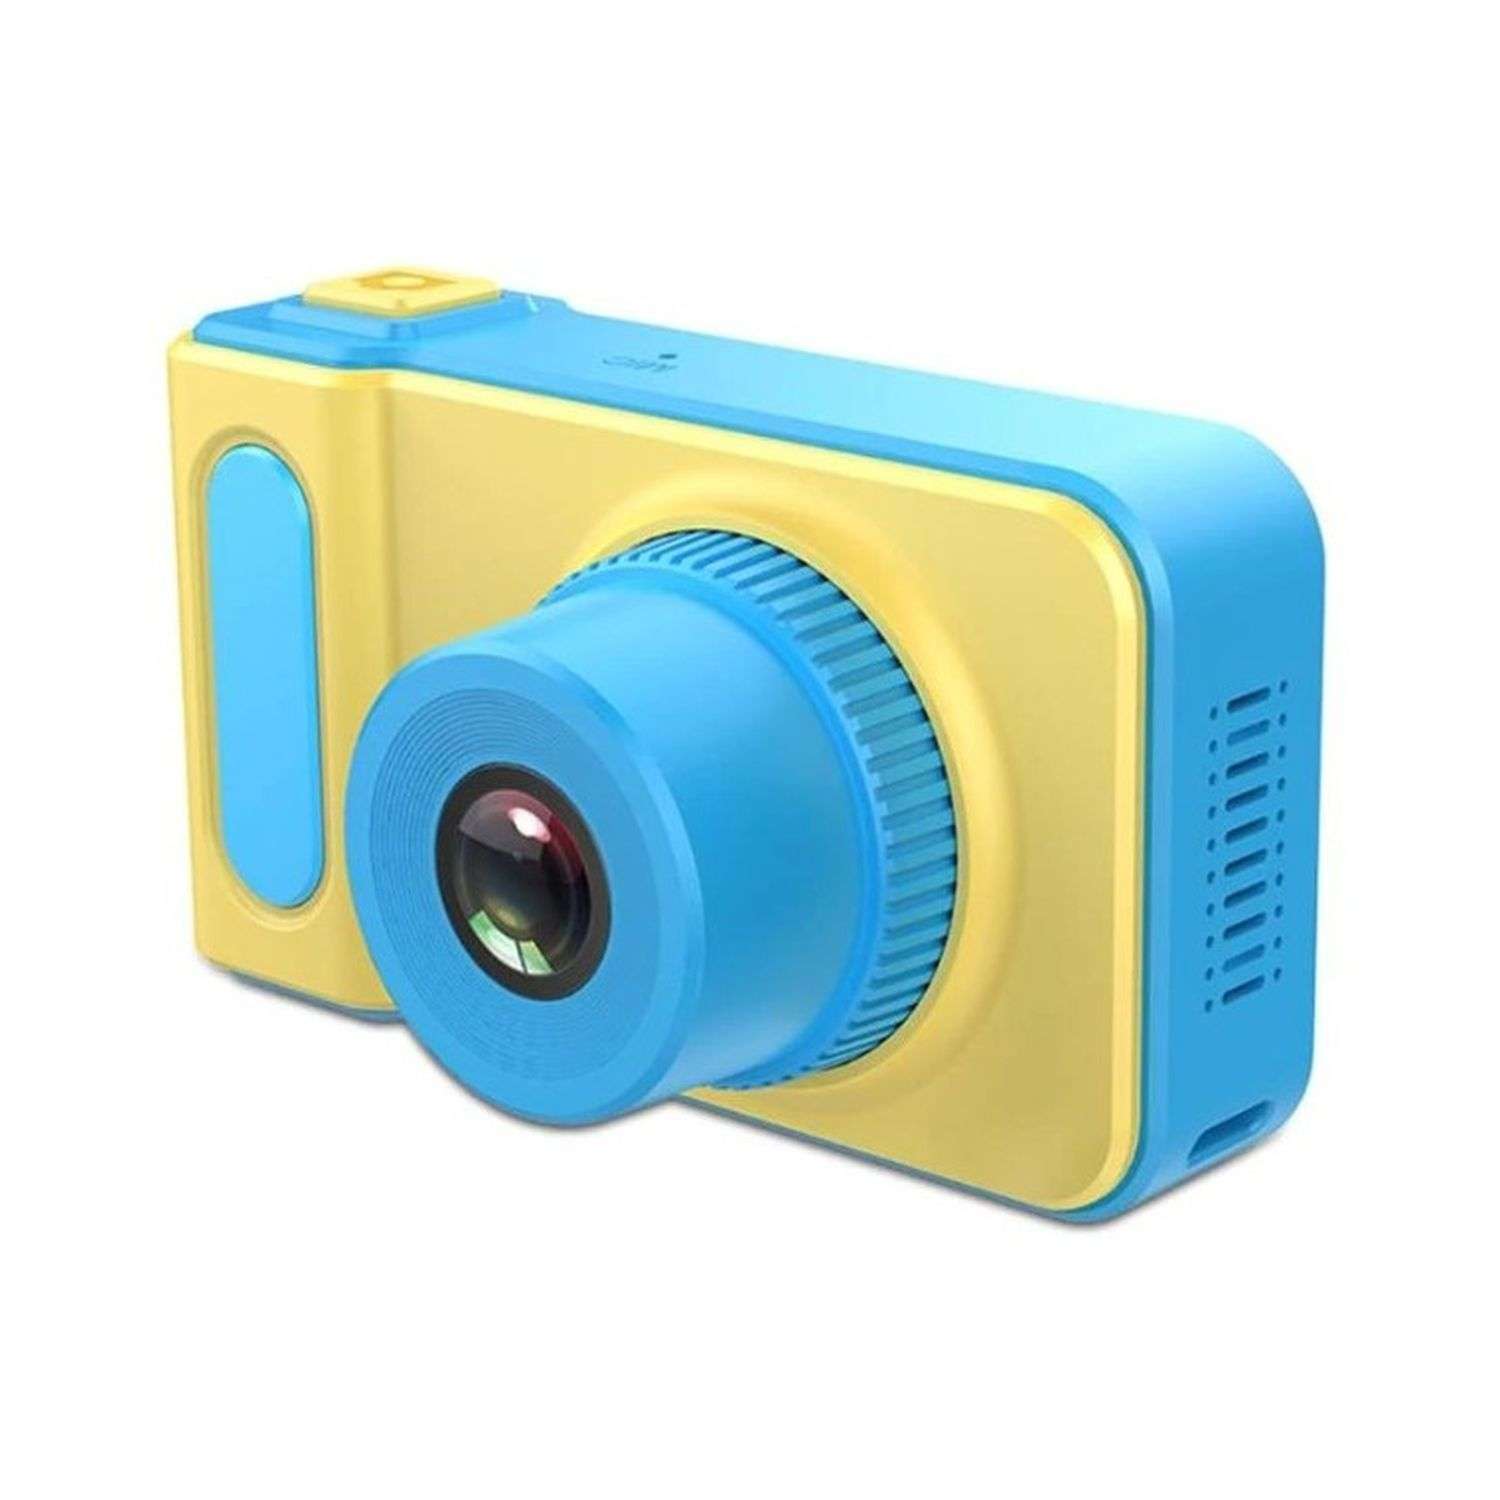 Фотоаппарат Uniglodis детский голубой - фото 1